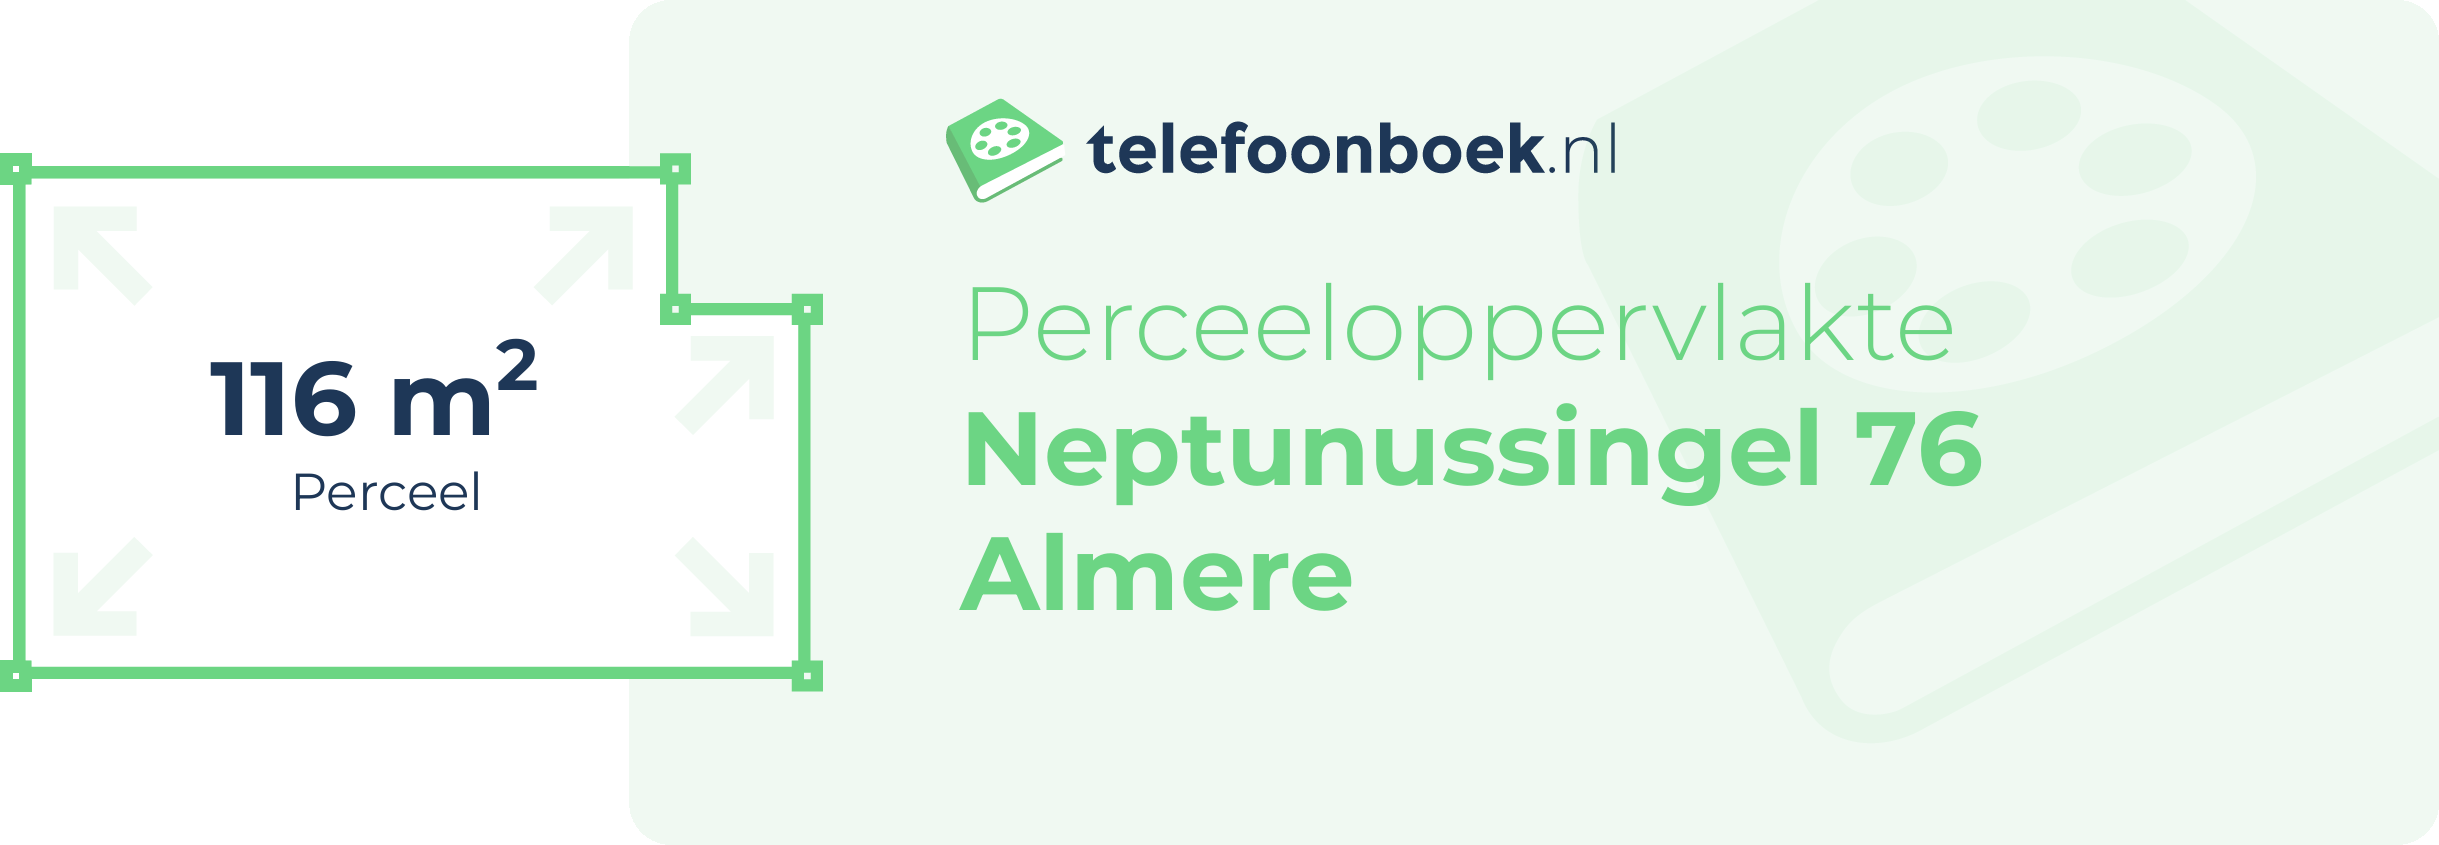 Perceeloppervlakte Neptunussingel 76 Almere